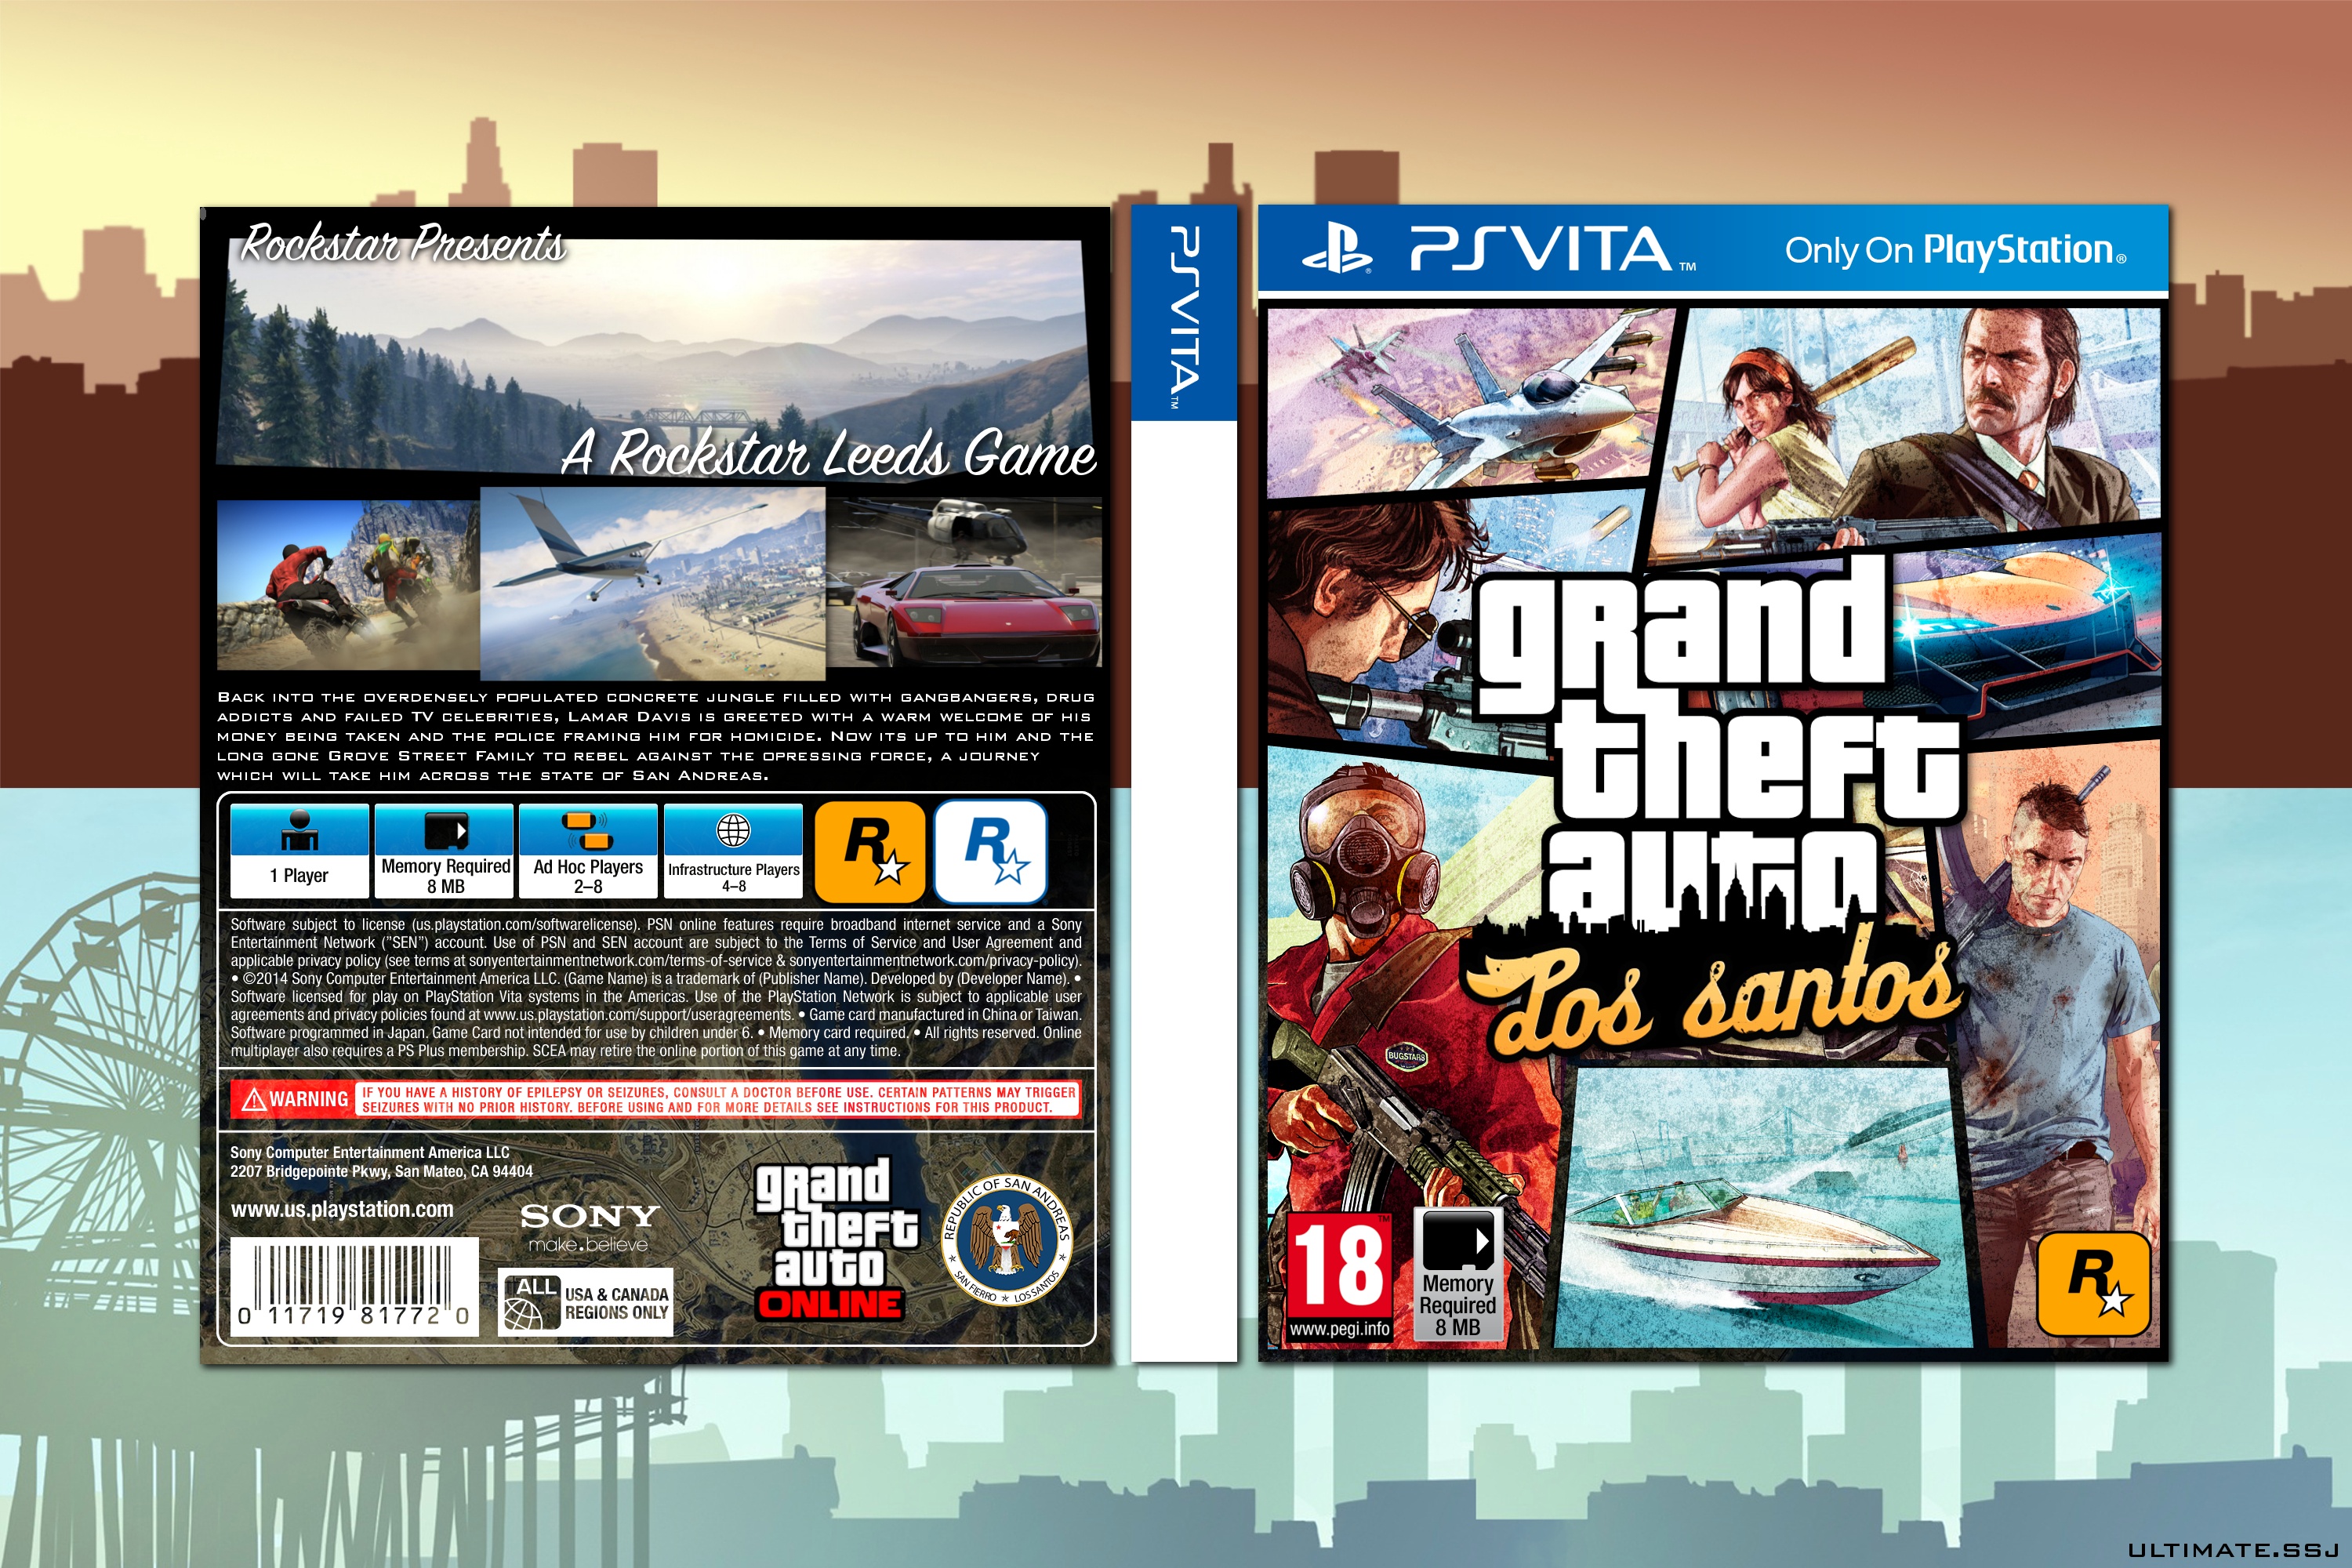 Grand Theft Auto: Los Santos box cover